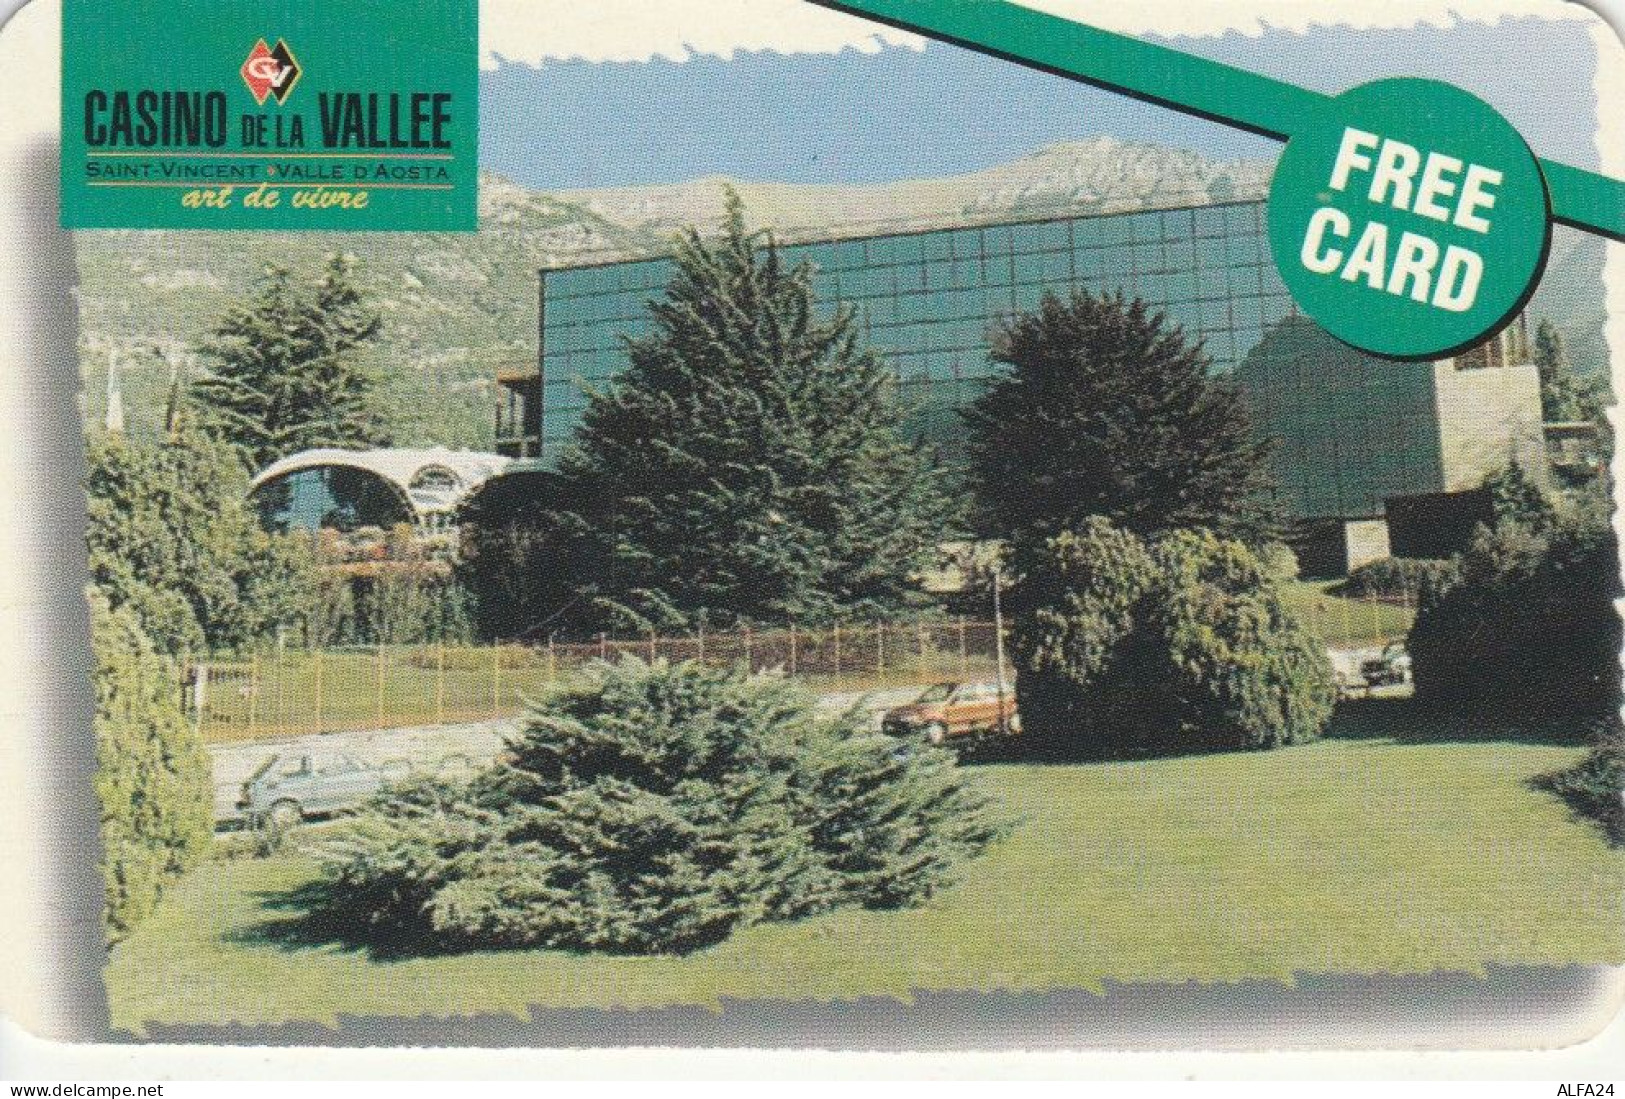 CARD INGRESSO CASINO DE LA VALLEE (CK3779 - Casinokarten